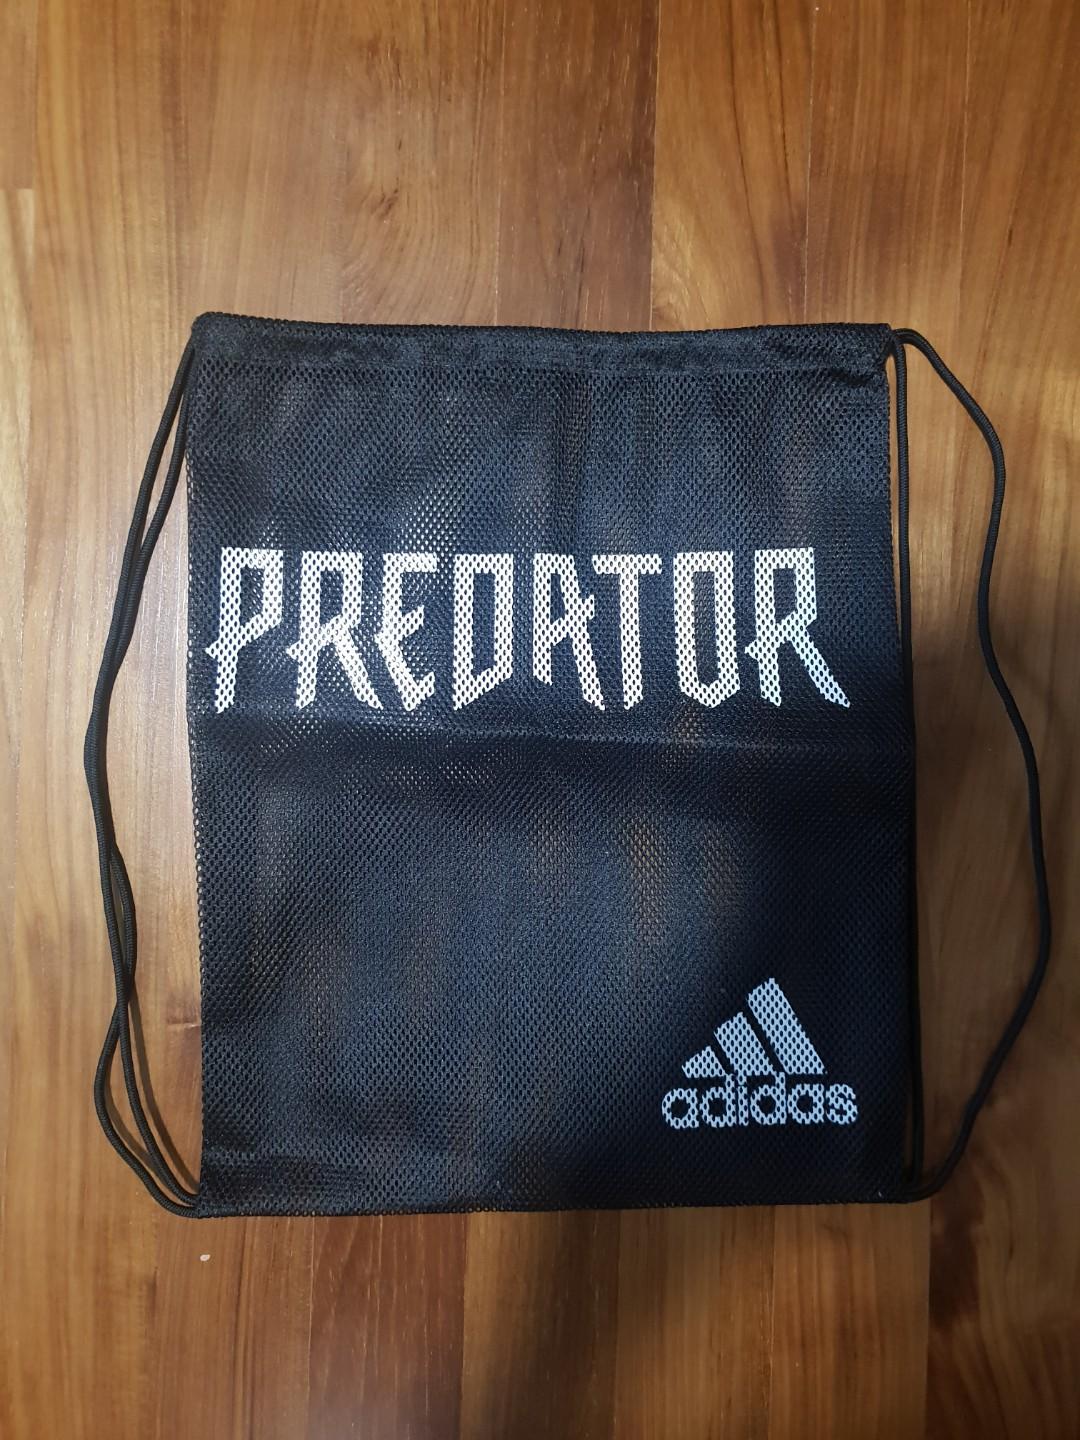 predator boot bag